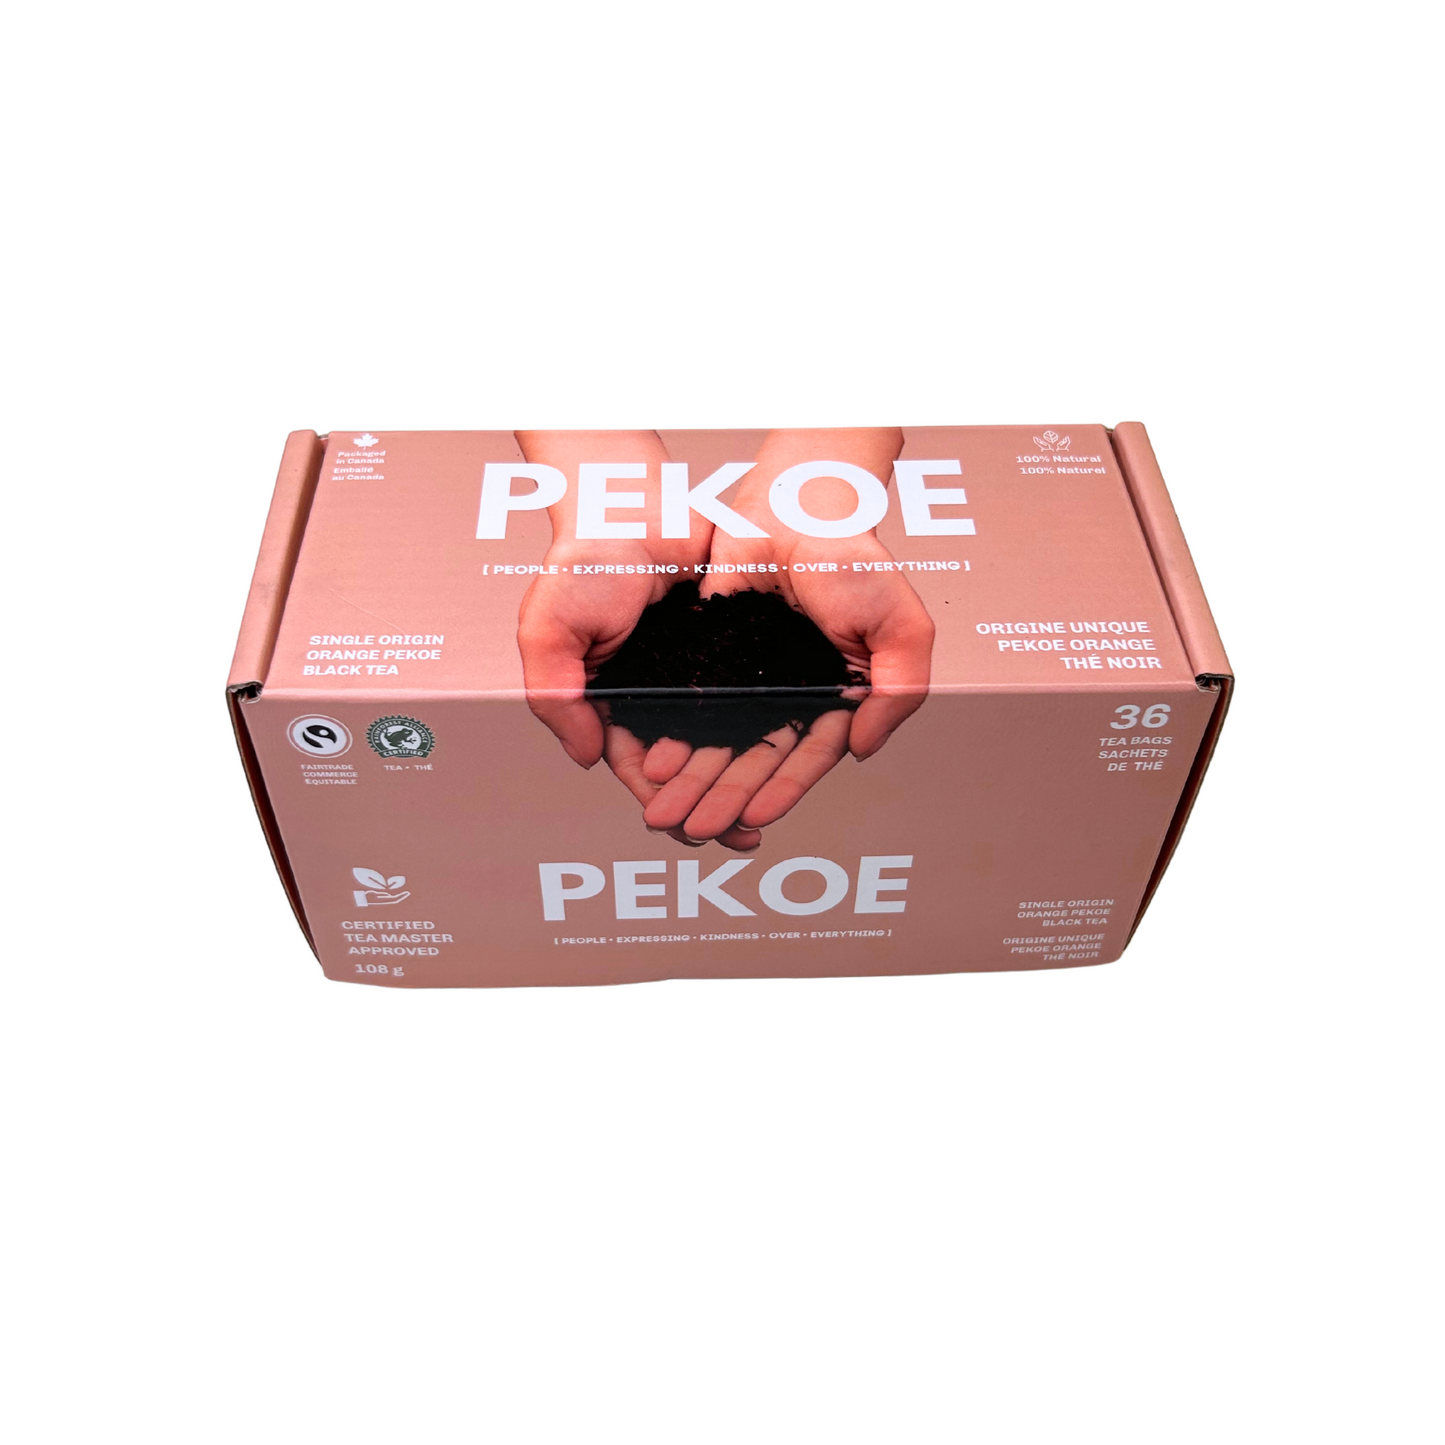 PEKOE | Single Origin Orange Pekoe Biodegradable Tea Bags (36 Count)